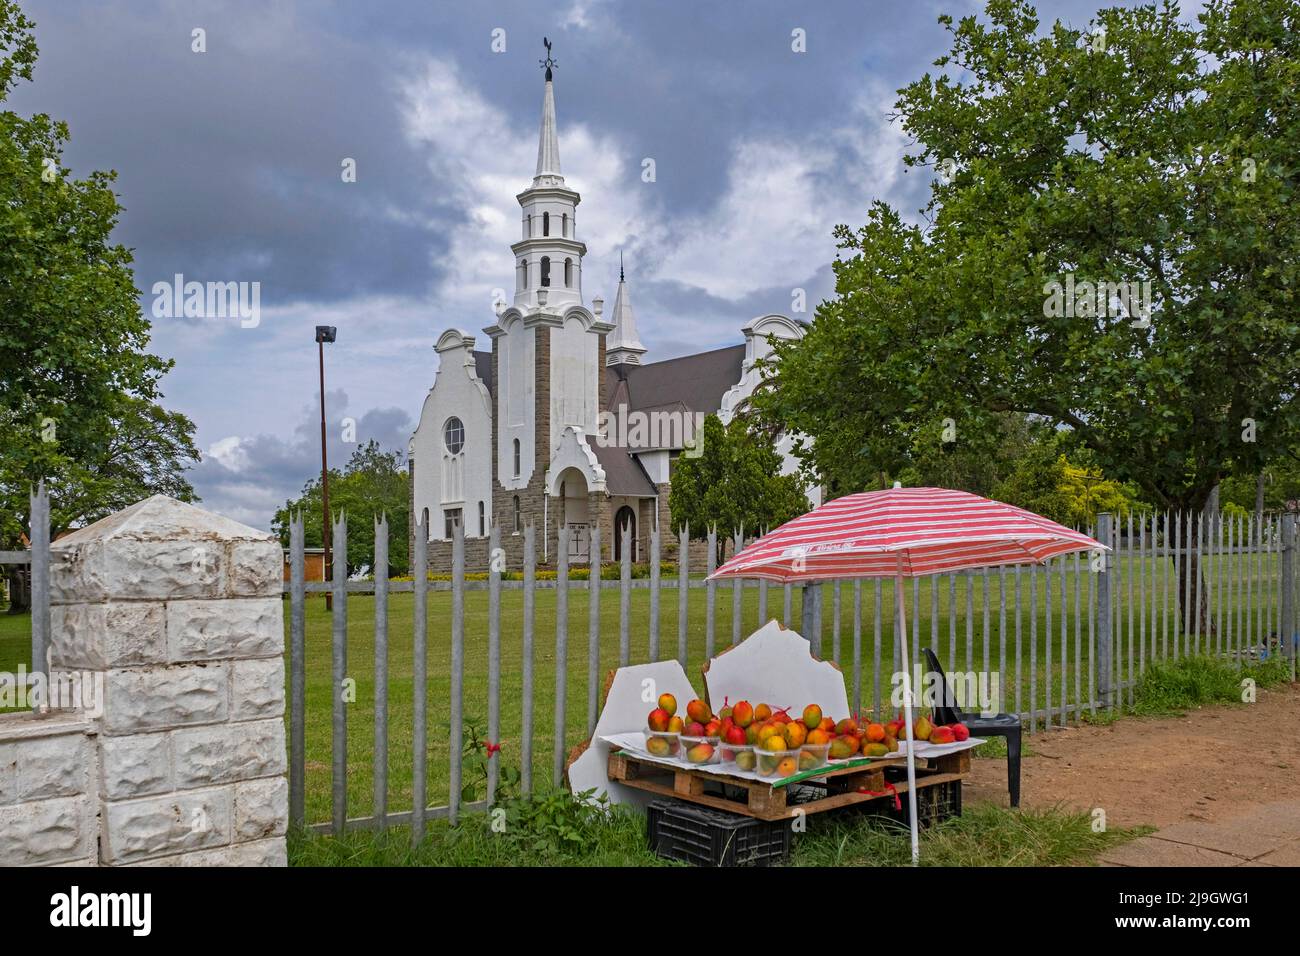 Bancarella di frutta di fronte alla Chiesa riformata olandese nella città Piet Retief / Mkhondo, Gert Sibande, provincia di Mpumalanga, Sudafrica Foto Stock